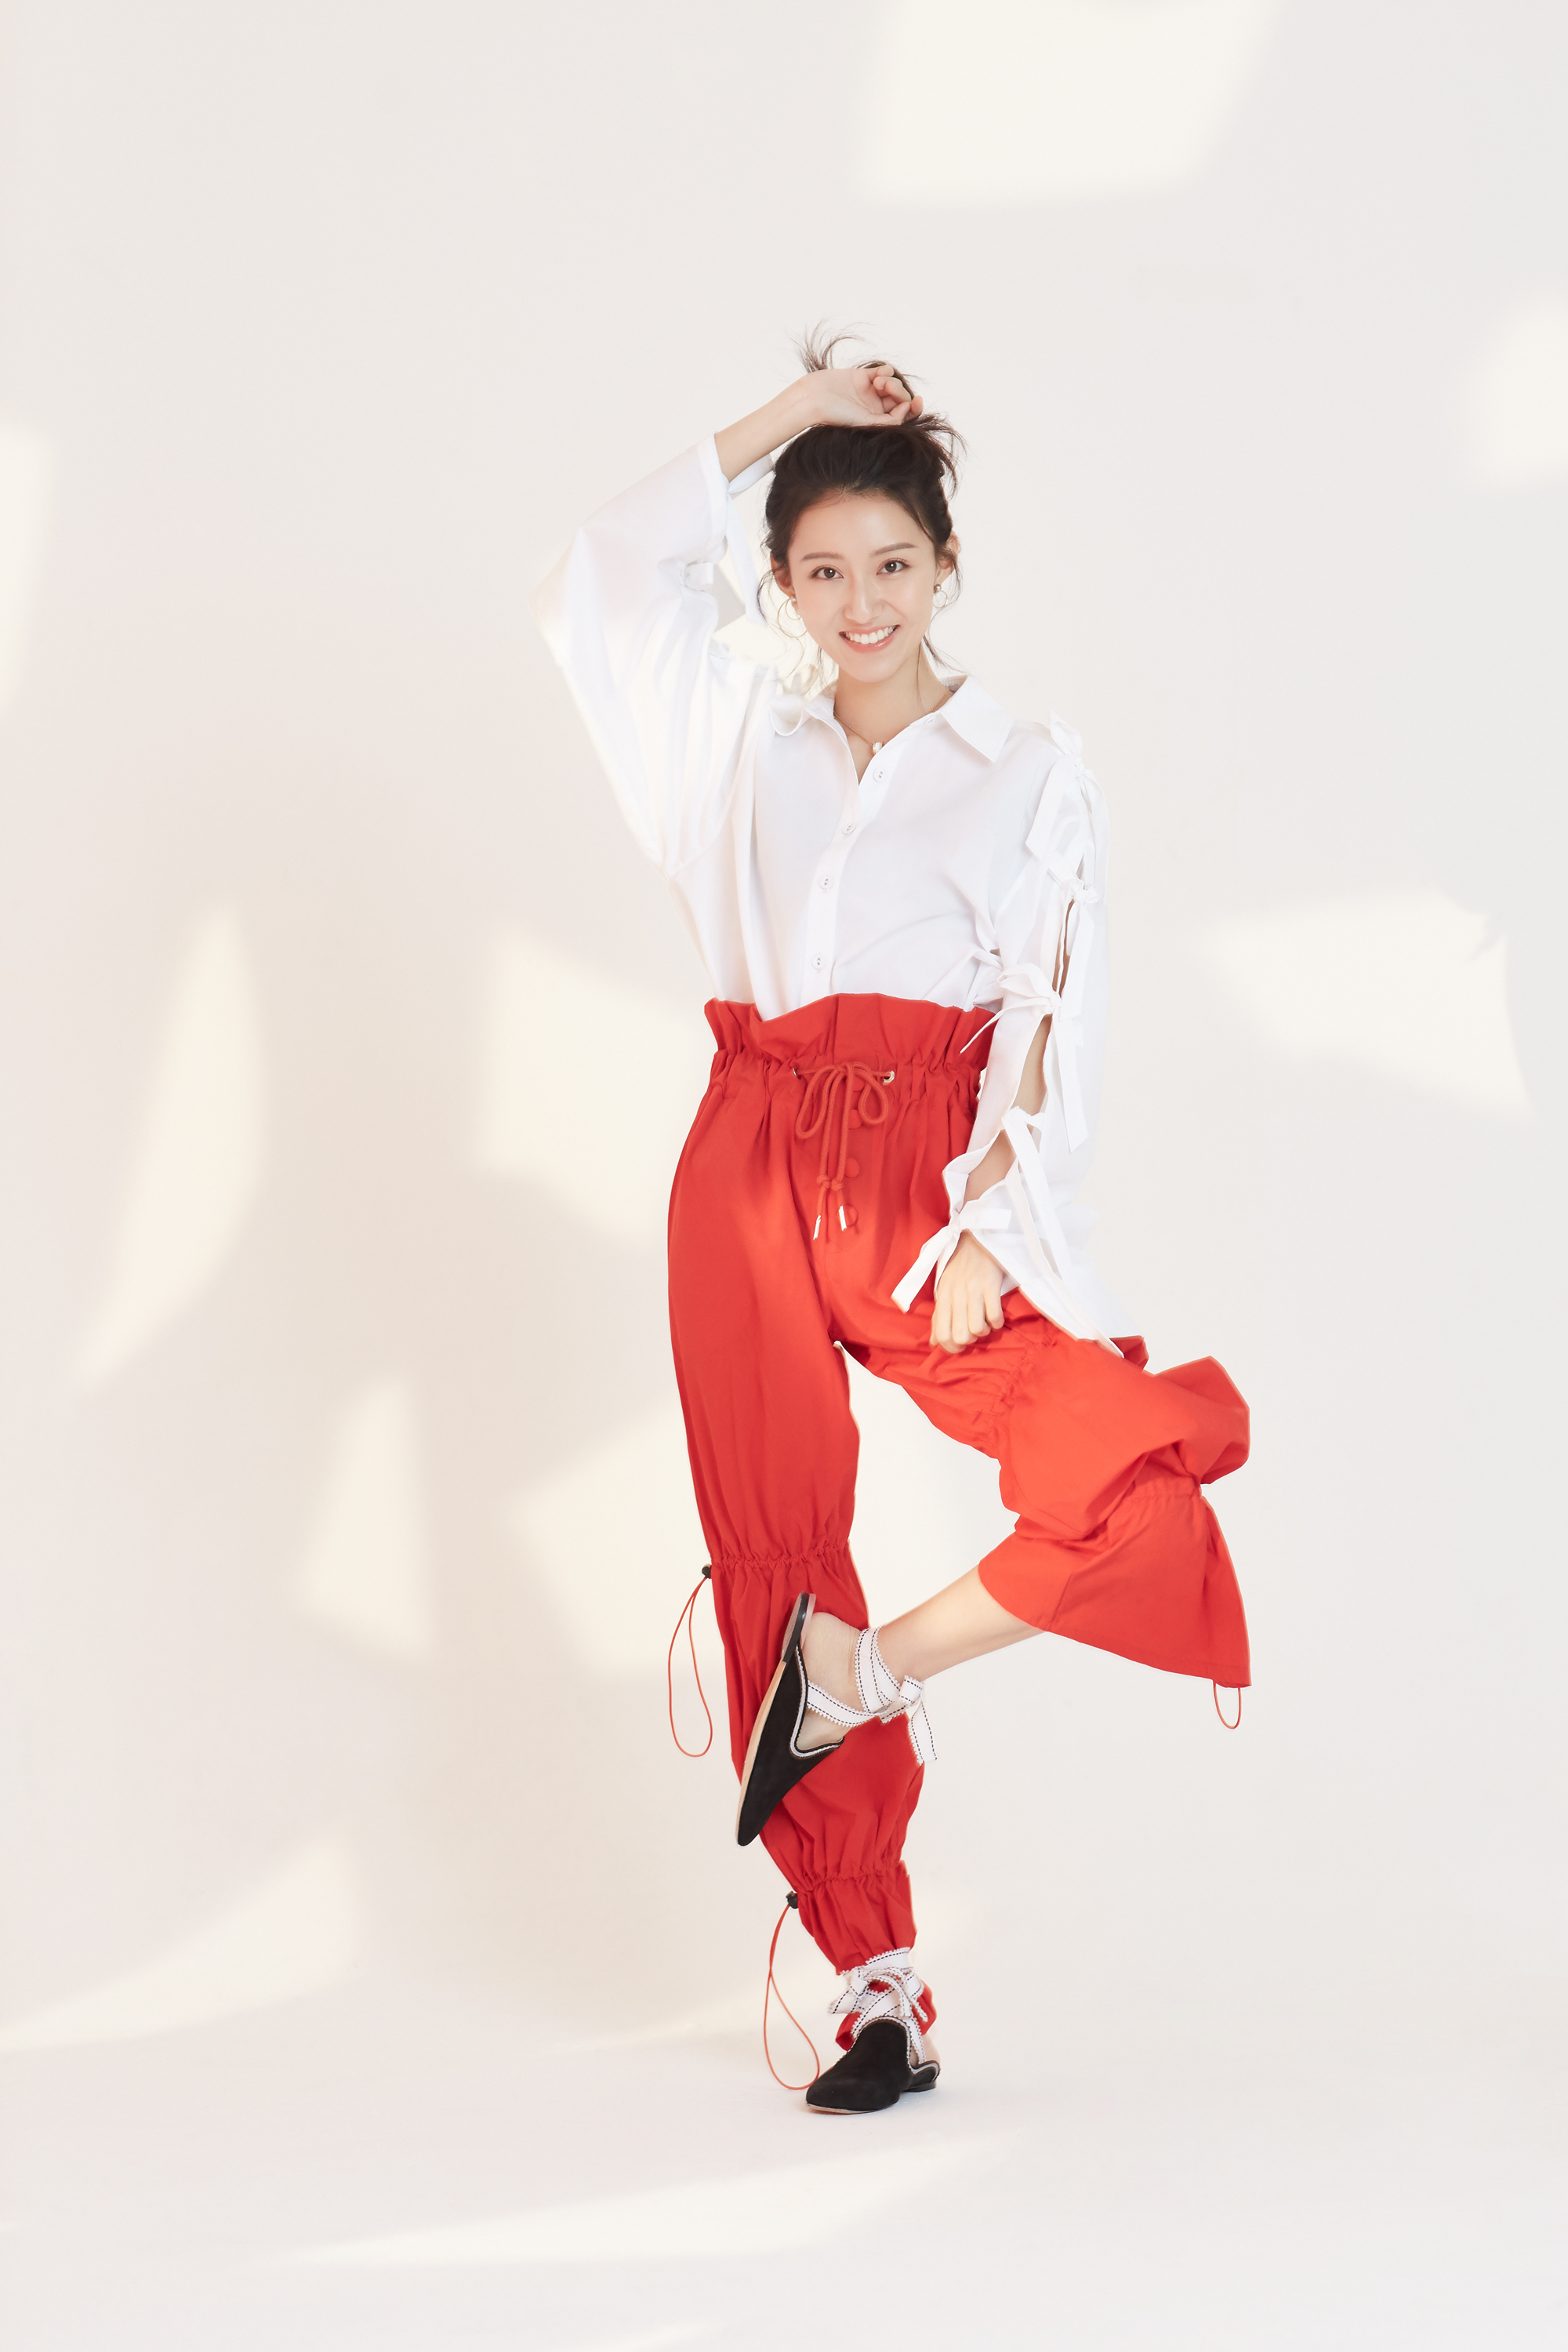 近日,新生代演员张鑫拍摄的一组时尚大片曝光,她身着红色花苞裤搭配